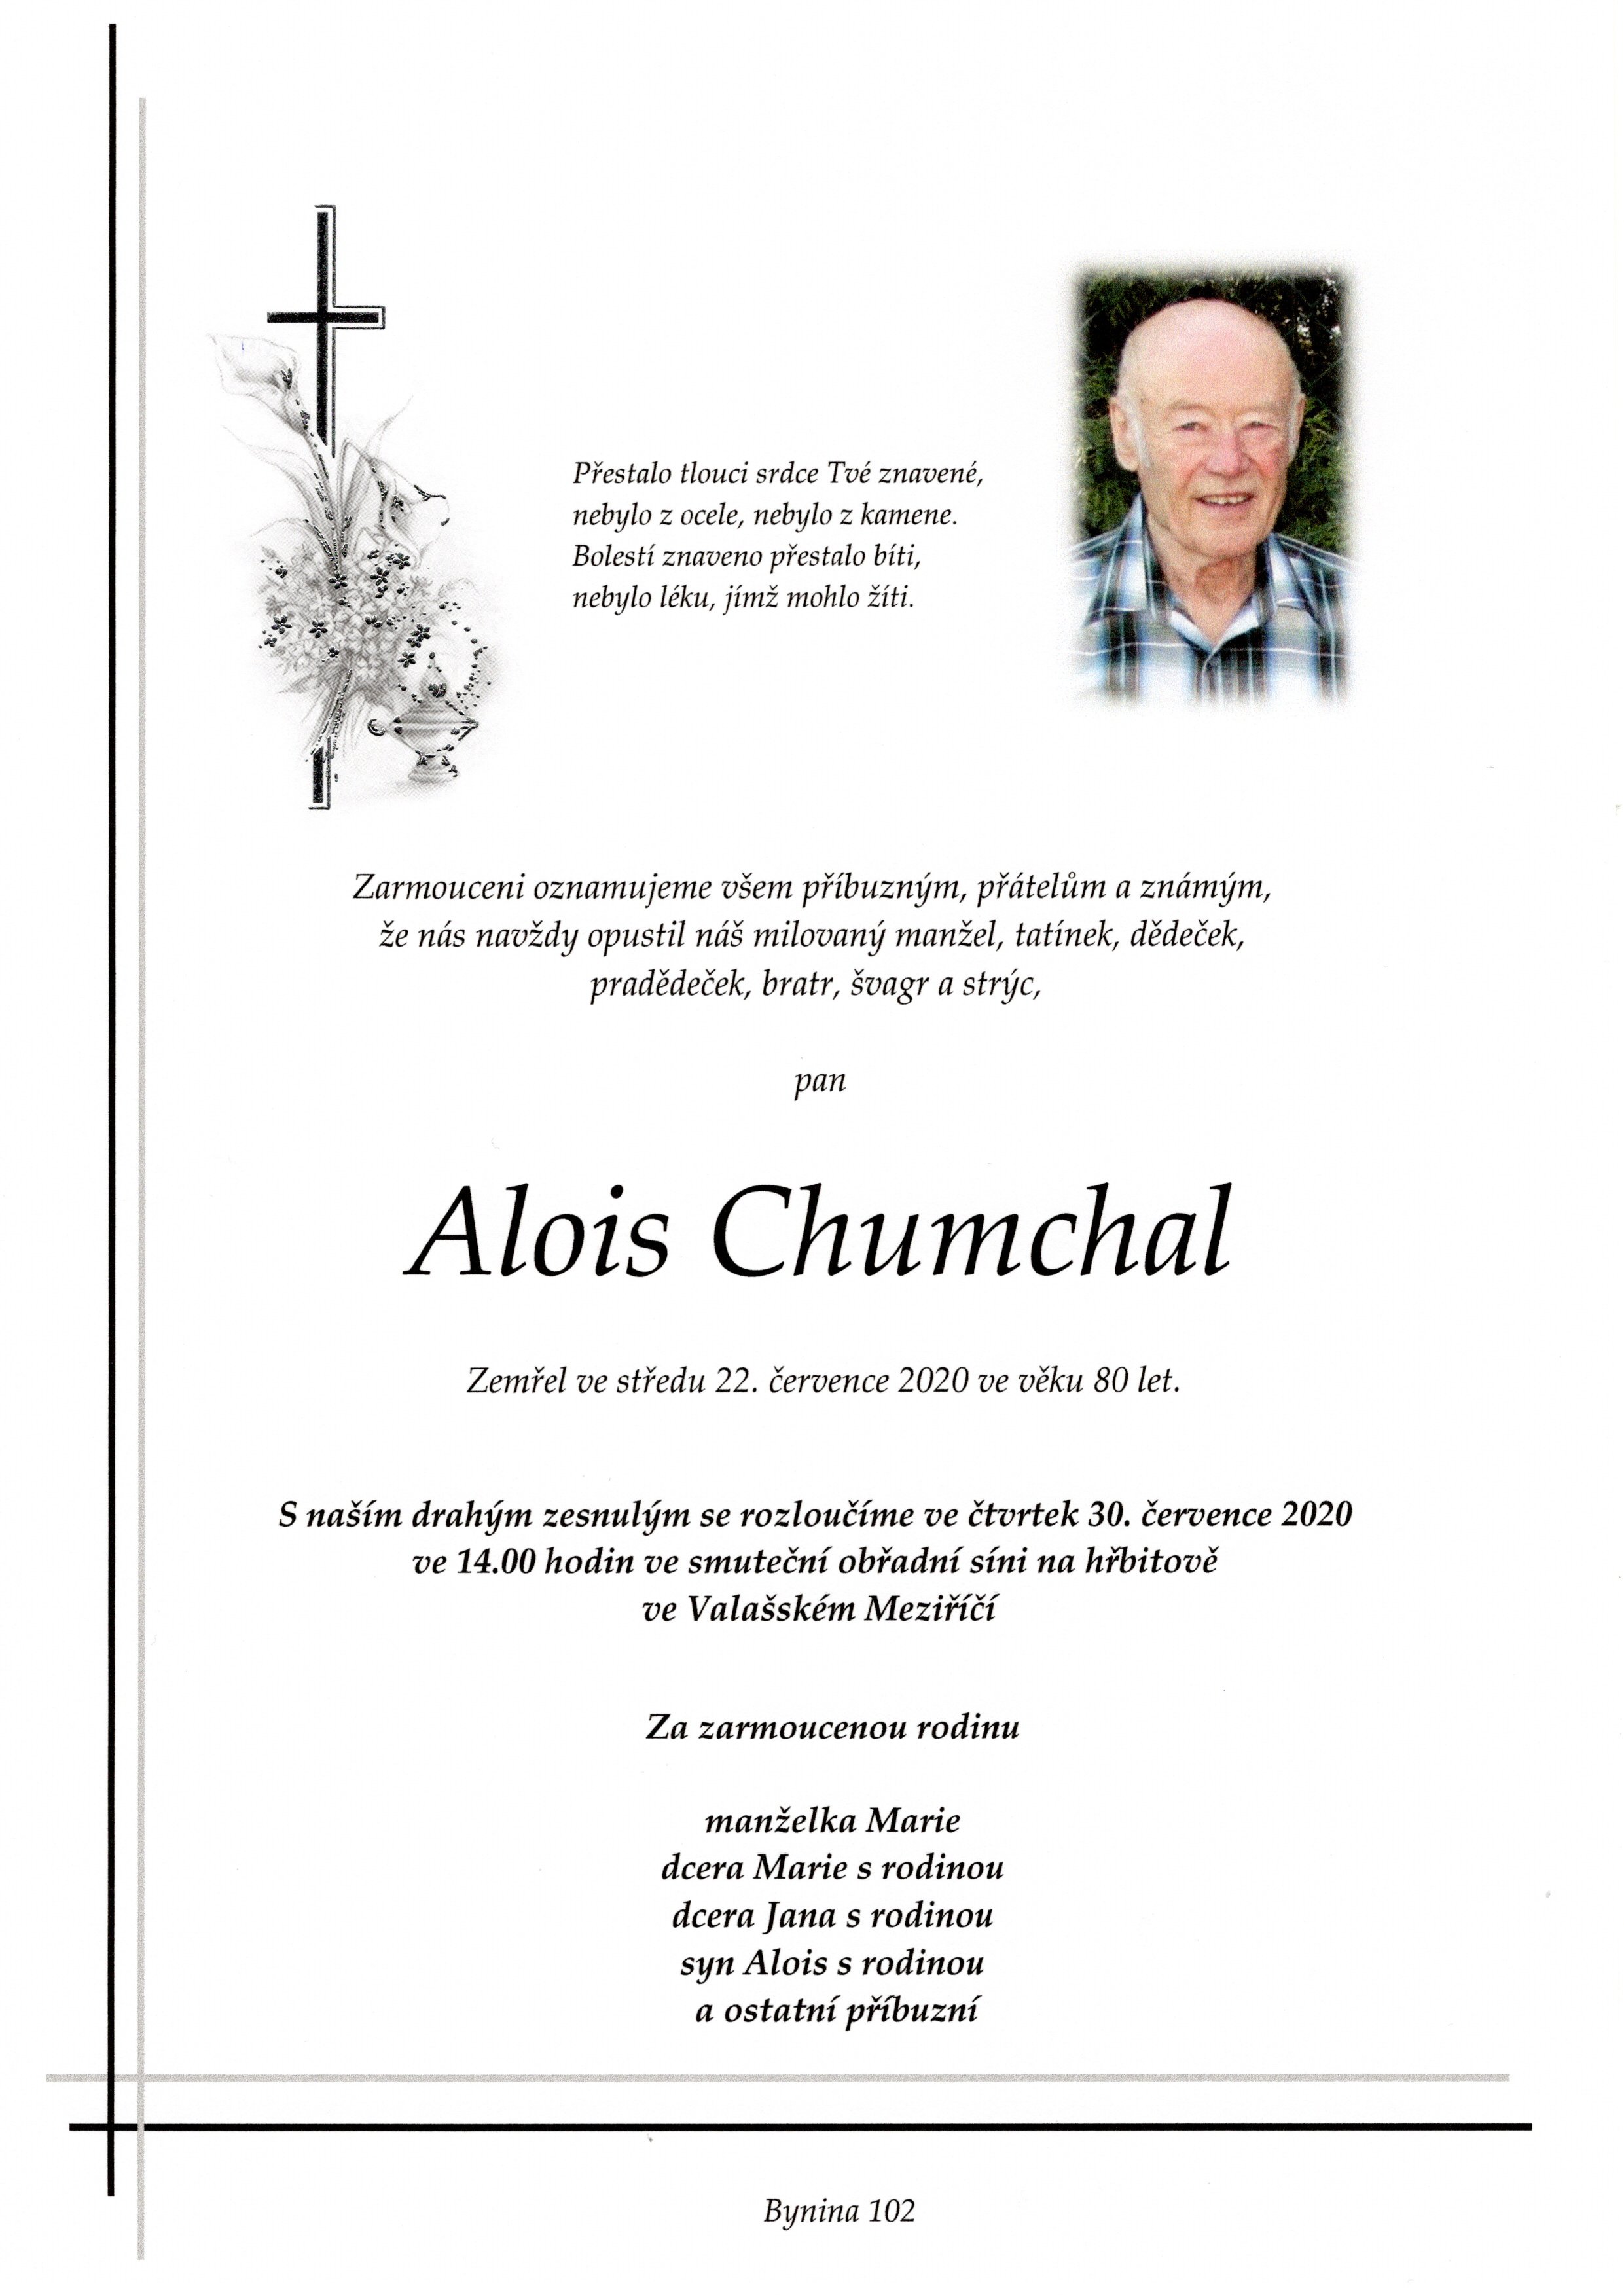 Alois Chumchal